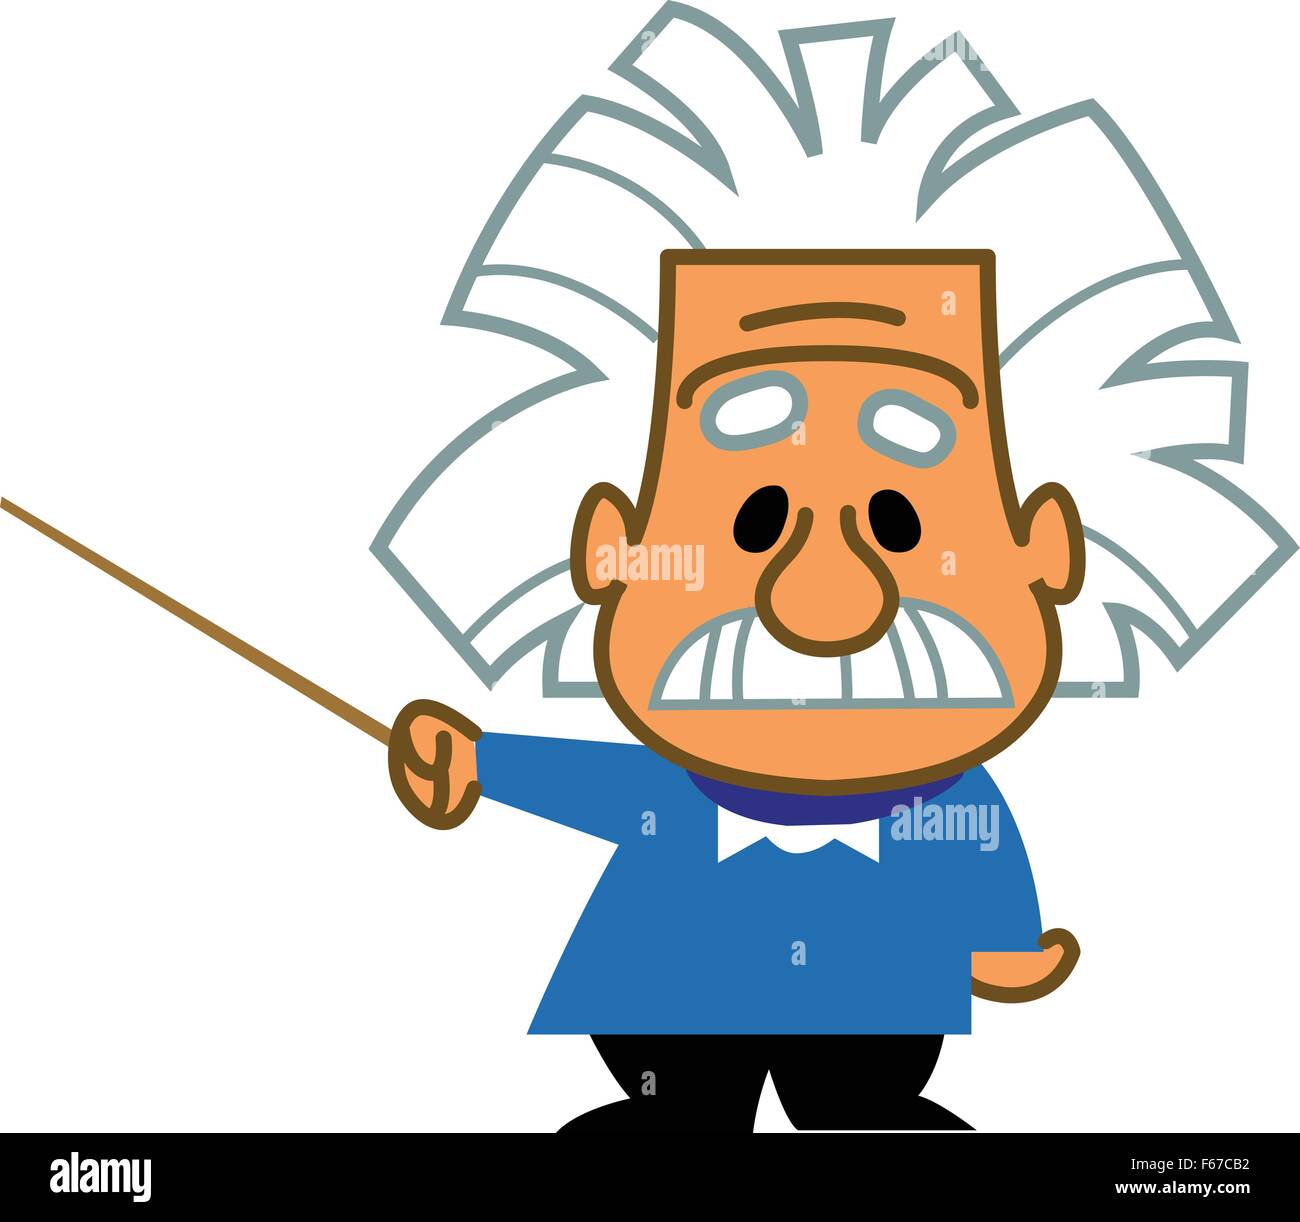 Albert Einstein cartoon scientist genius professor teacher holding a pointer Stock Vector